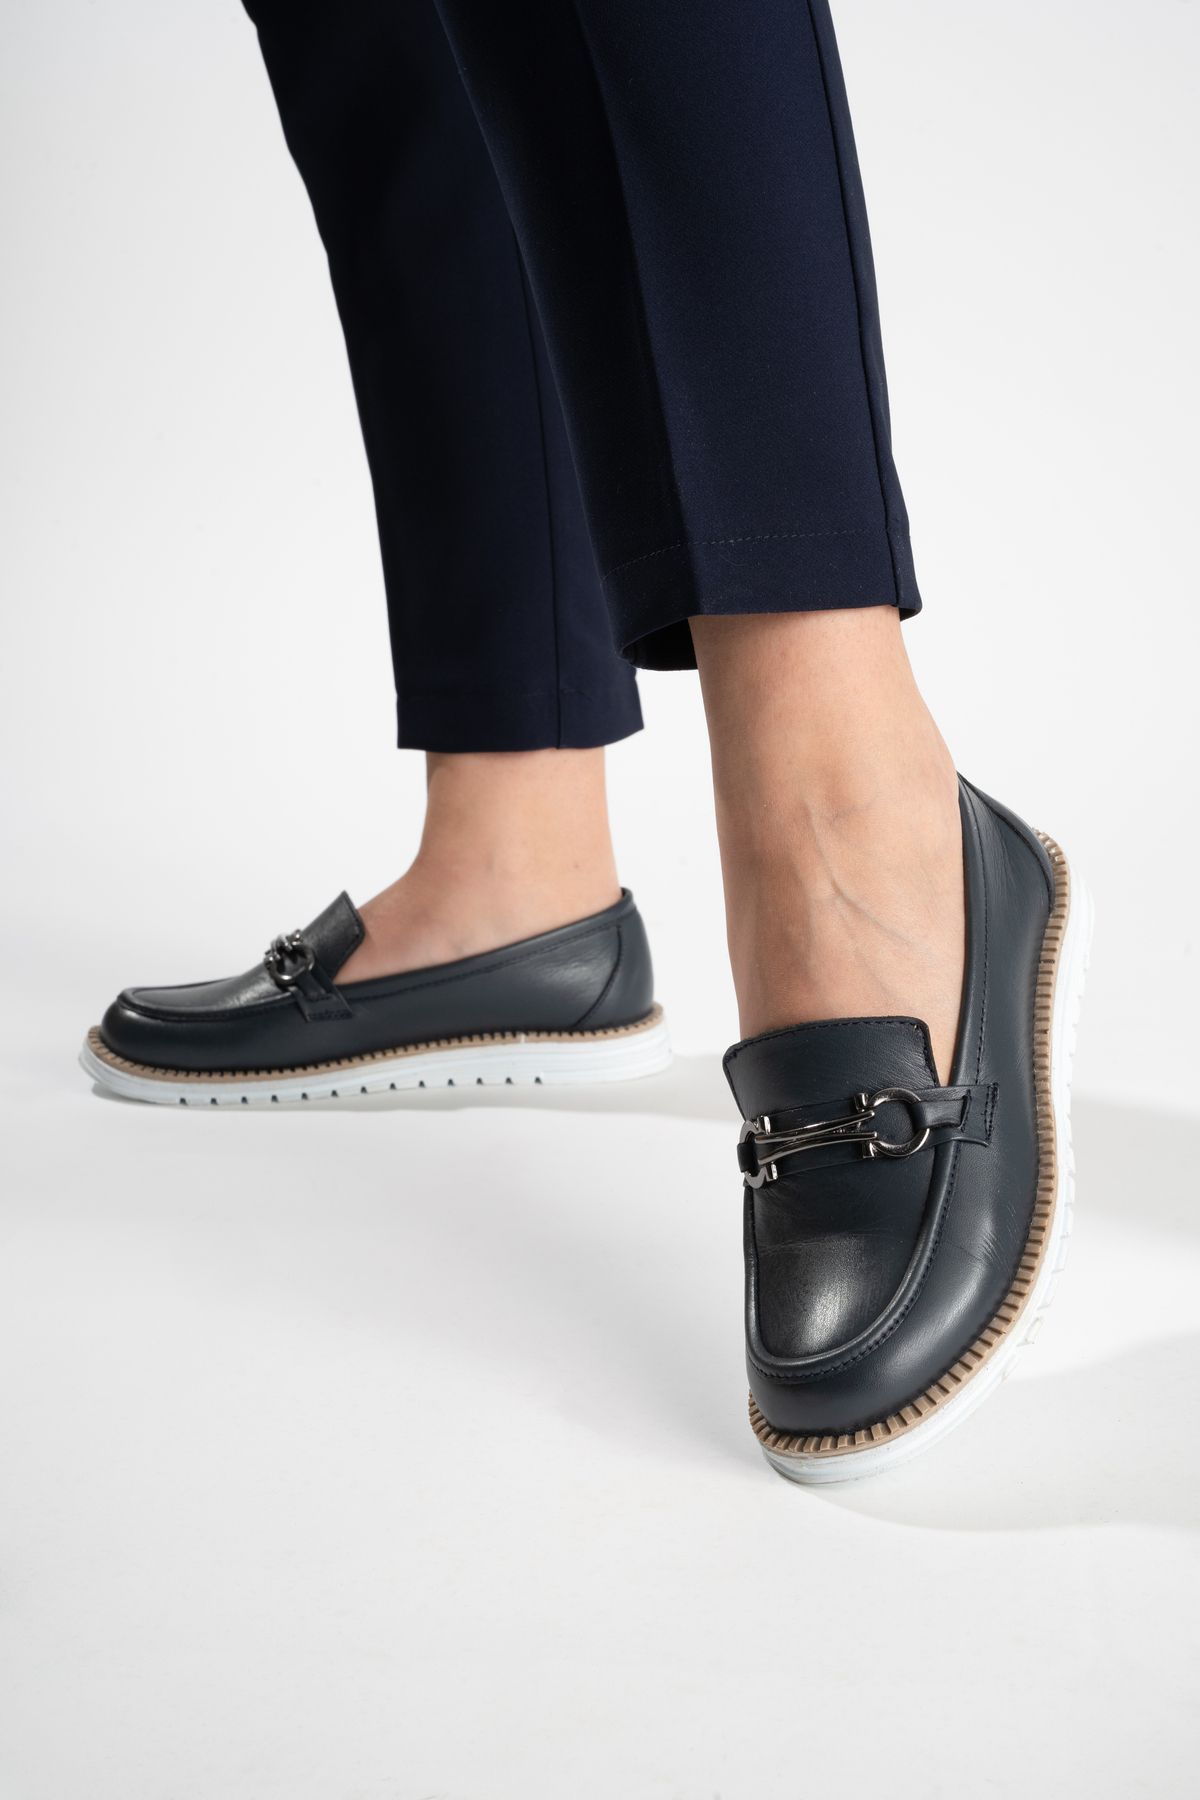 Cabra Blanca Hakiki Deri Loafer Gümüş Tokalı Loafer Babet İş Ayakkabısı Makosen Ayakkabı